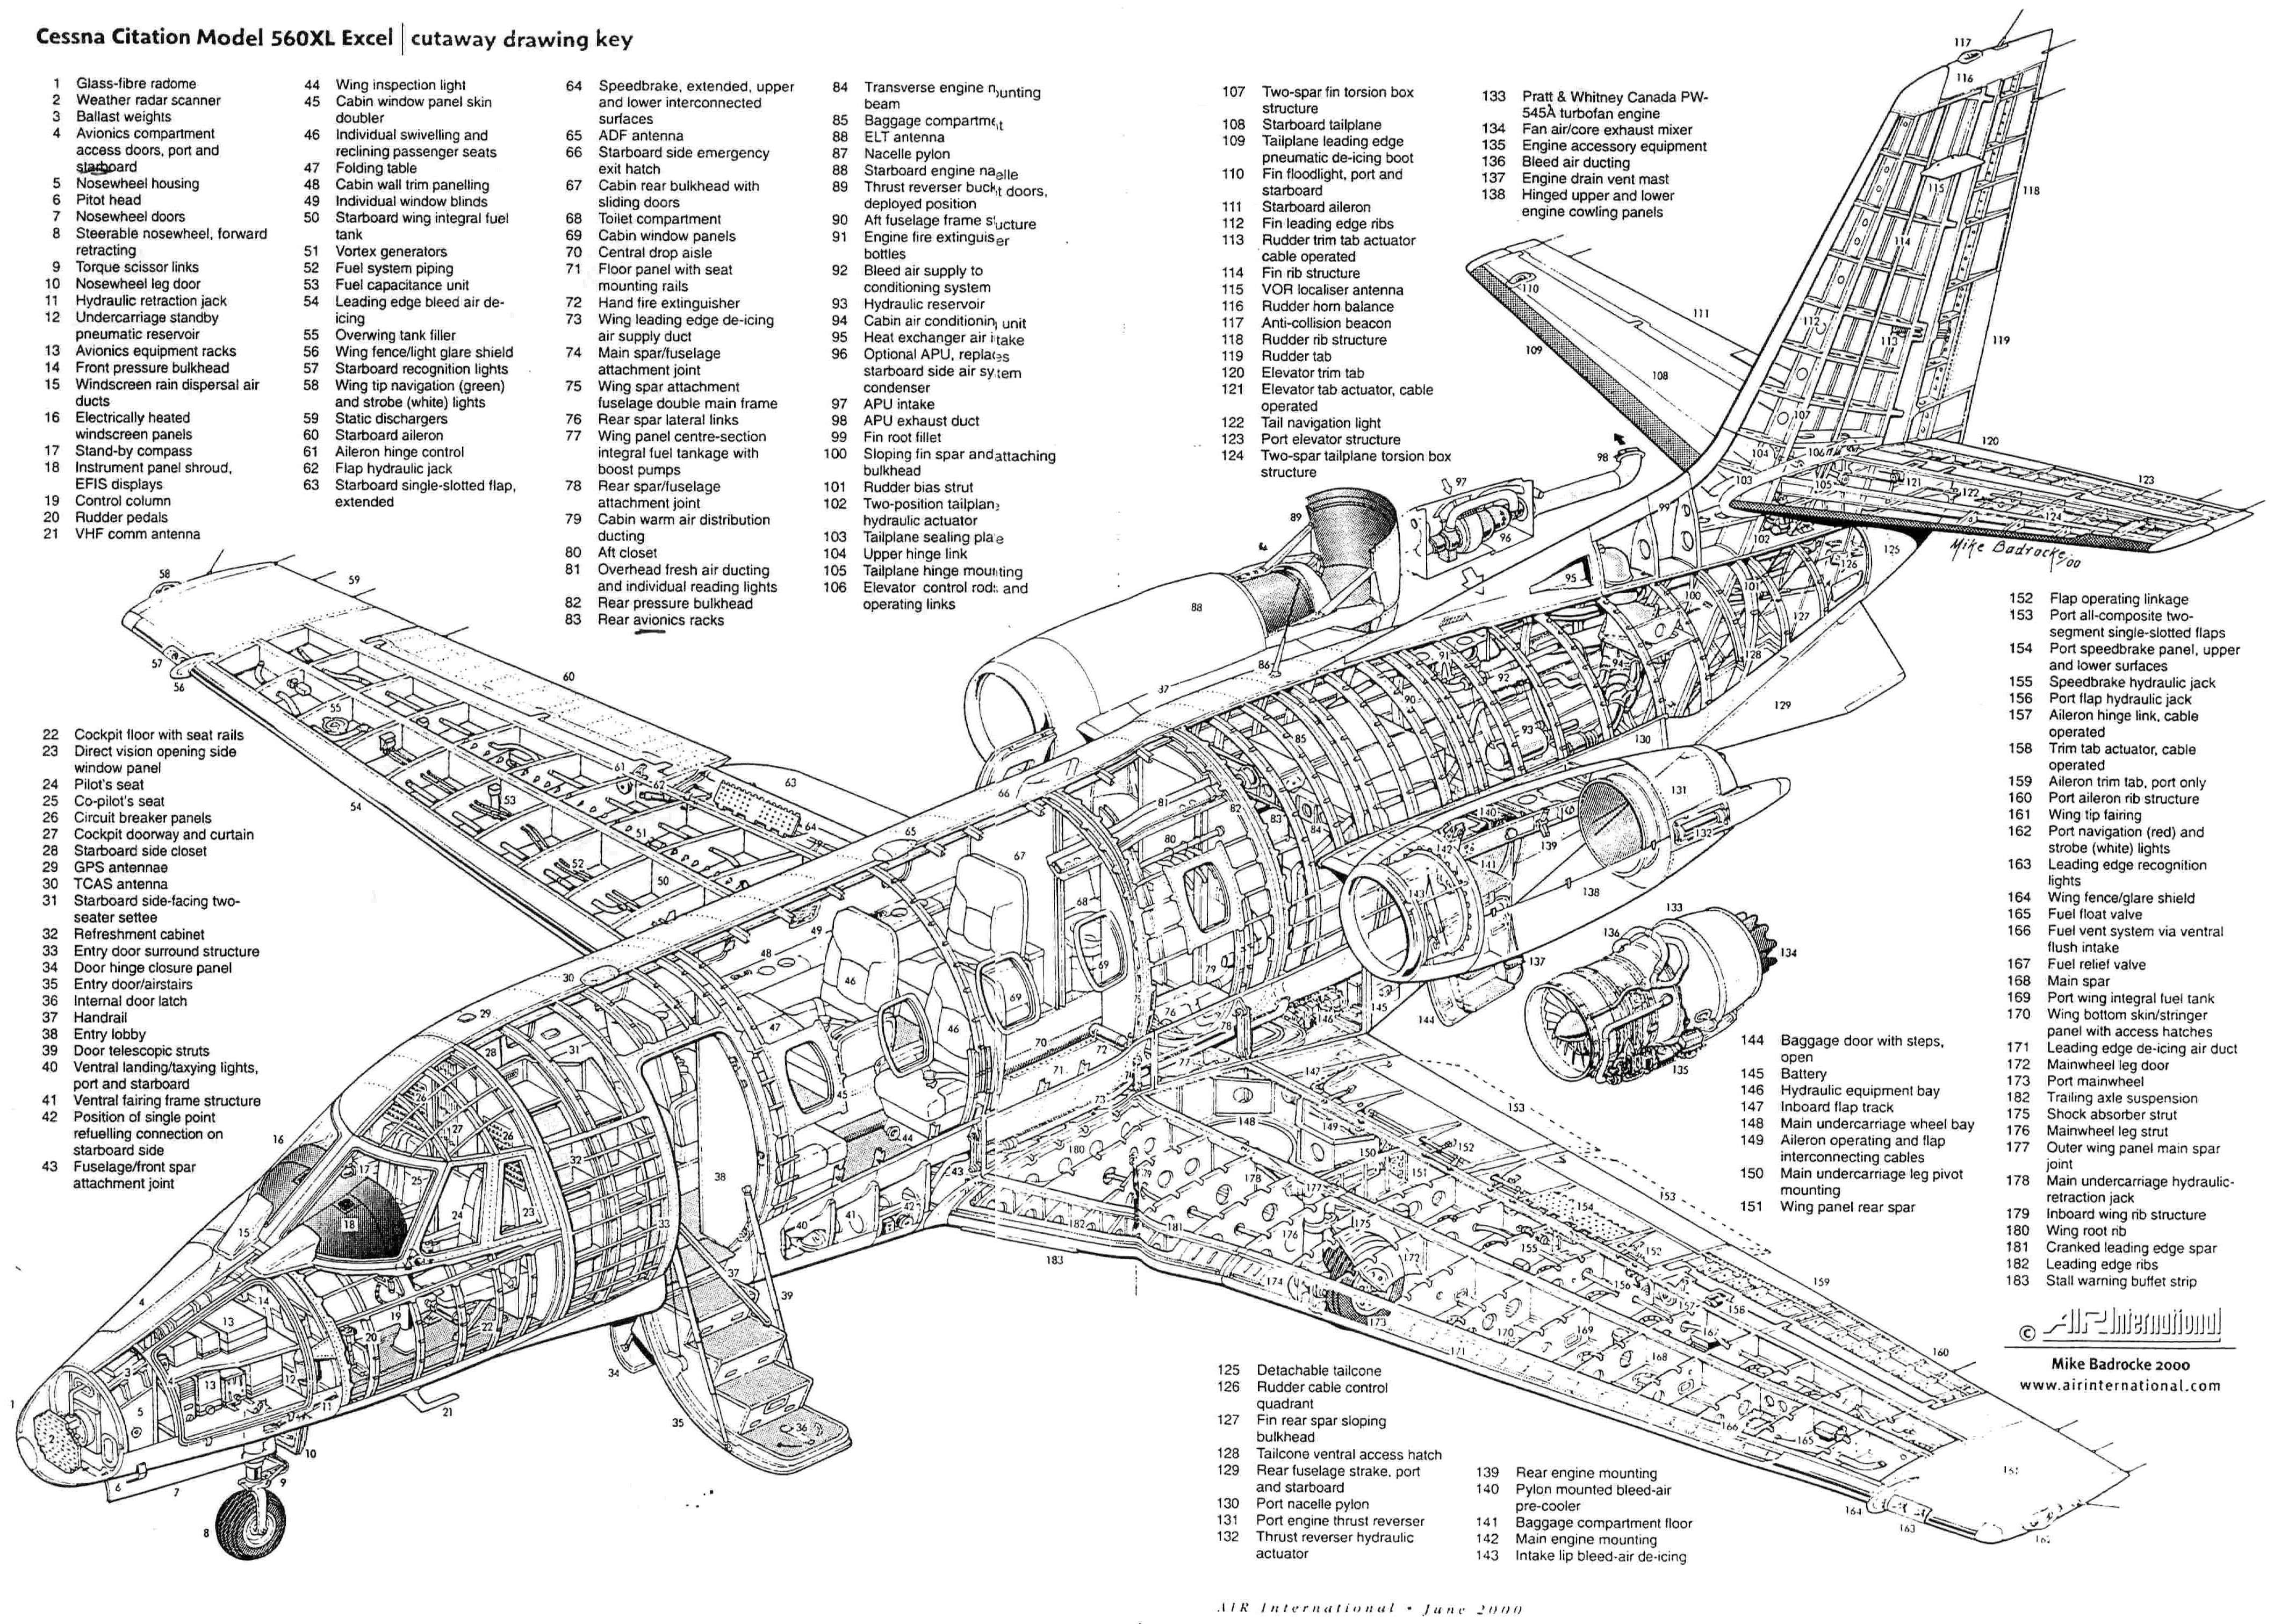 Cessna_Citation_Model_560xl | Aircraft of World War II - WW2Aircraft ...